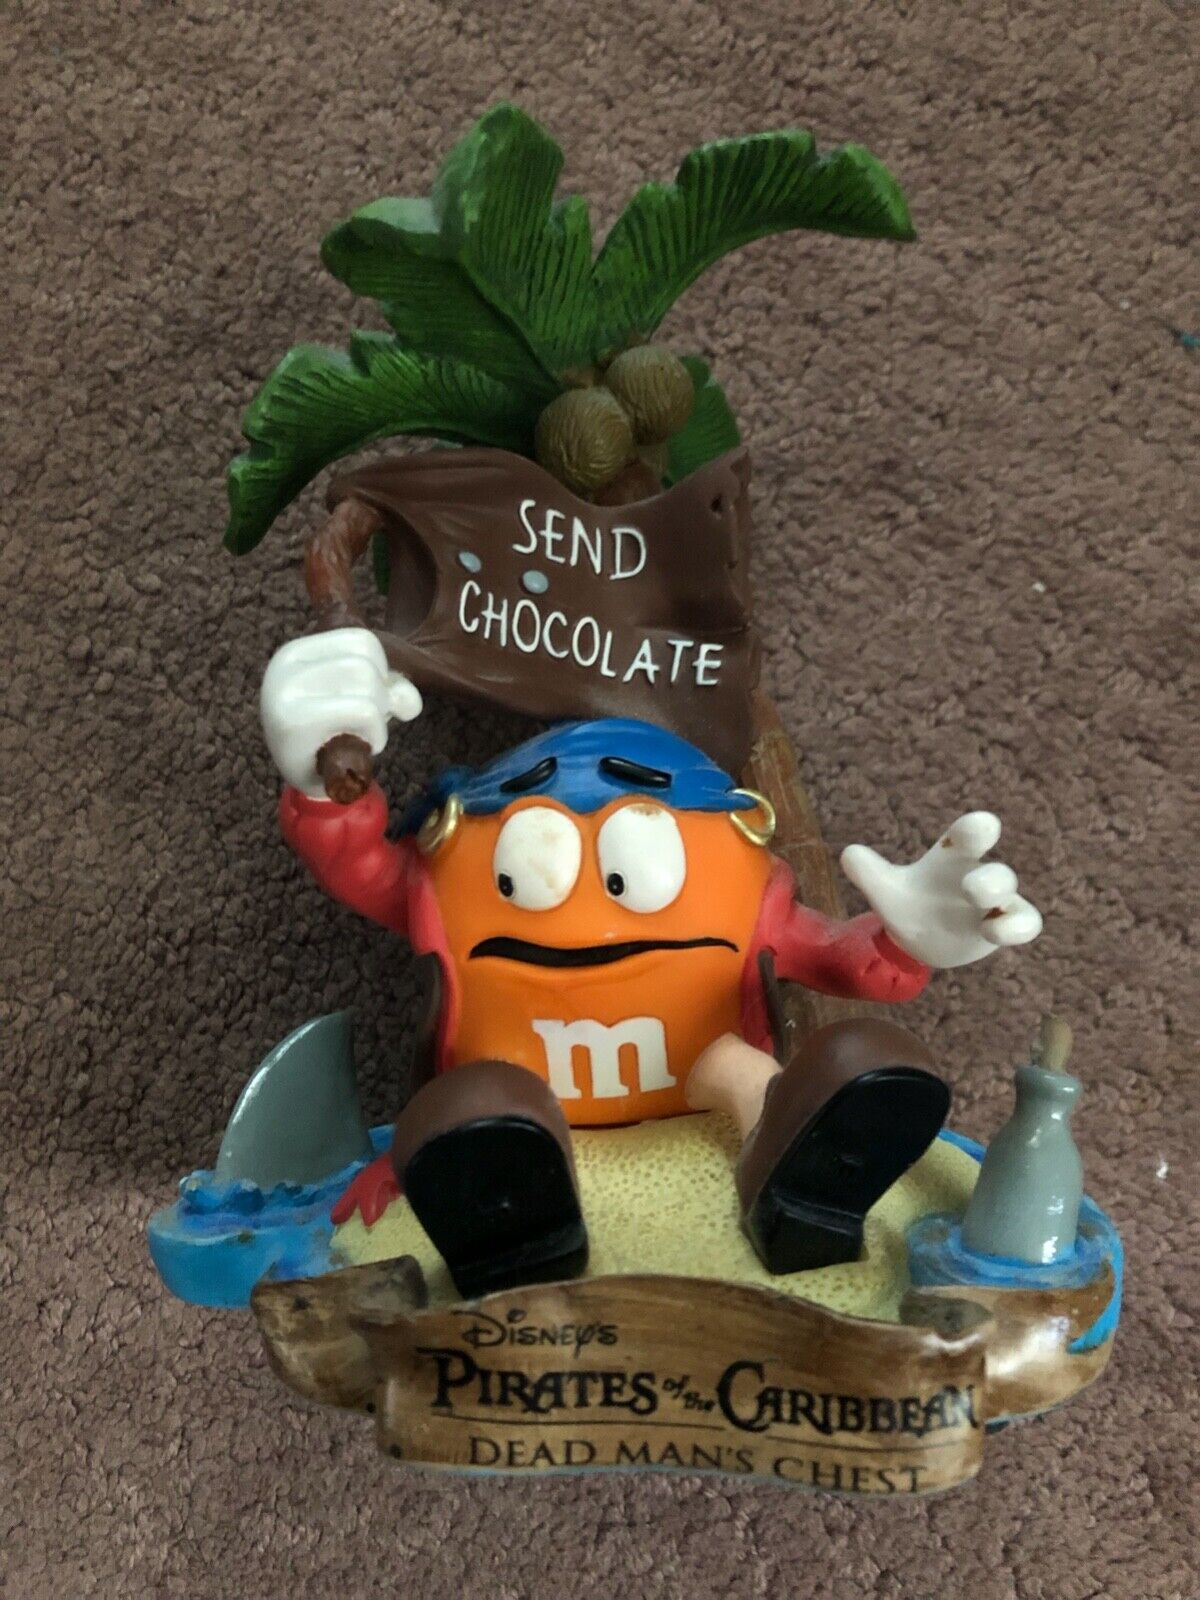 M&M pirates of carribean statue orange send chocolate